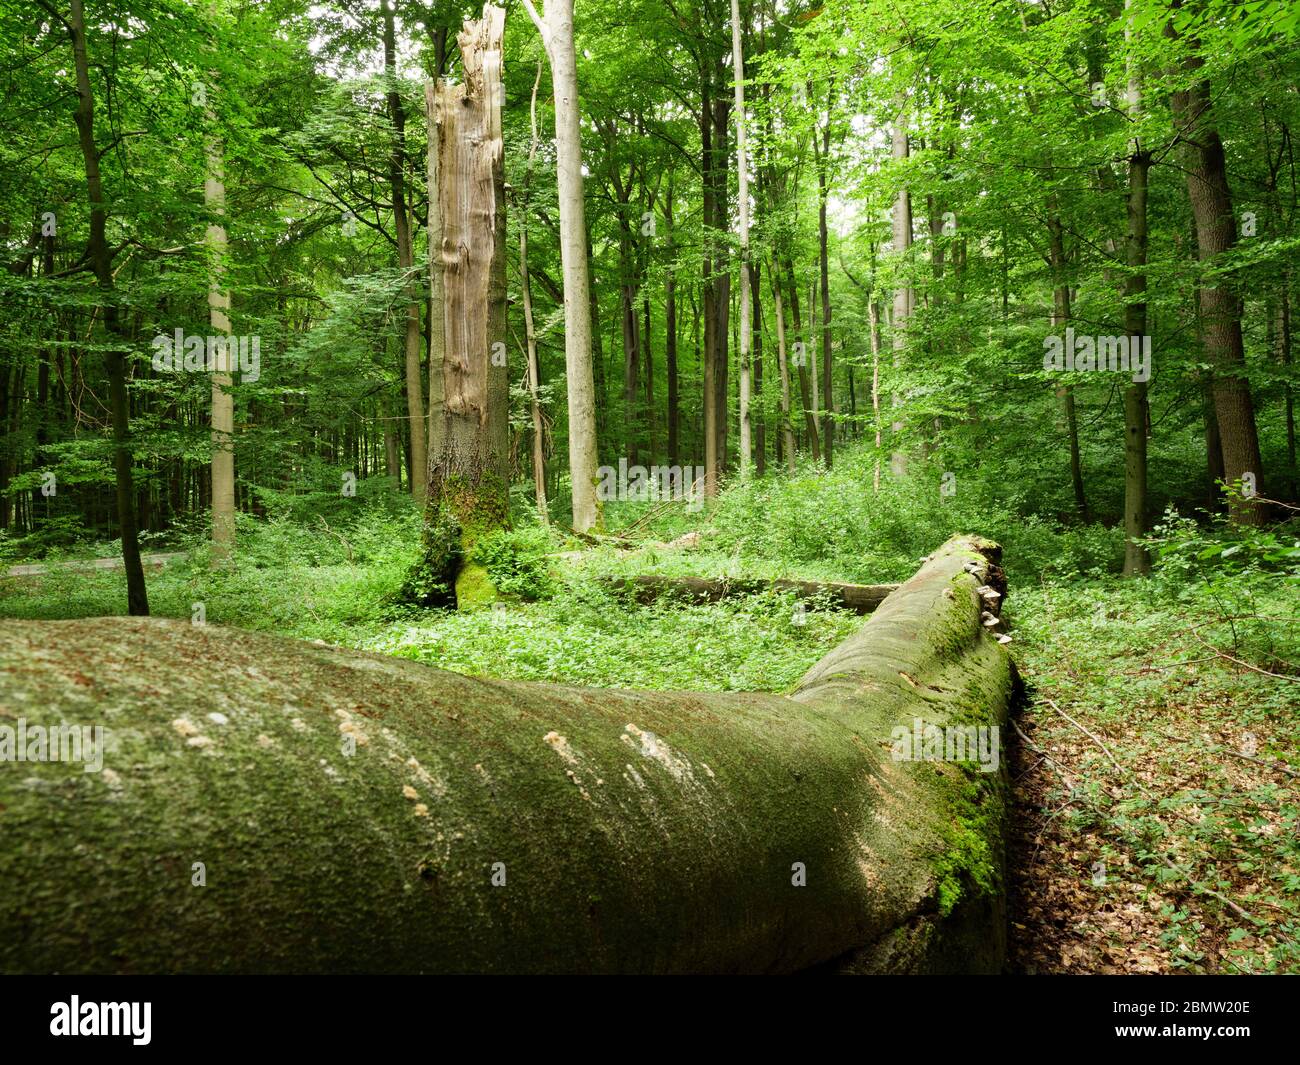 Nationalpark Hainich, UNESCO Welterbe Buchenwald, Urwald, Thüringen, Deutschland Foto Stock